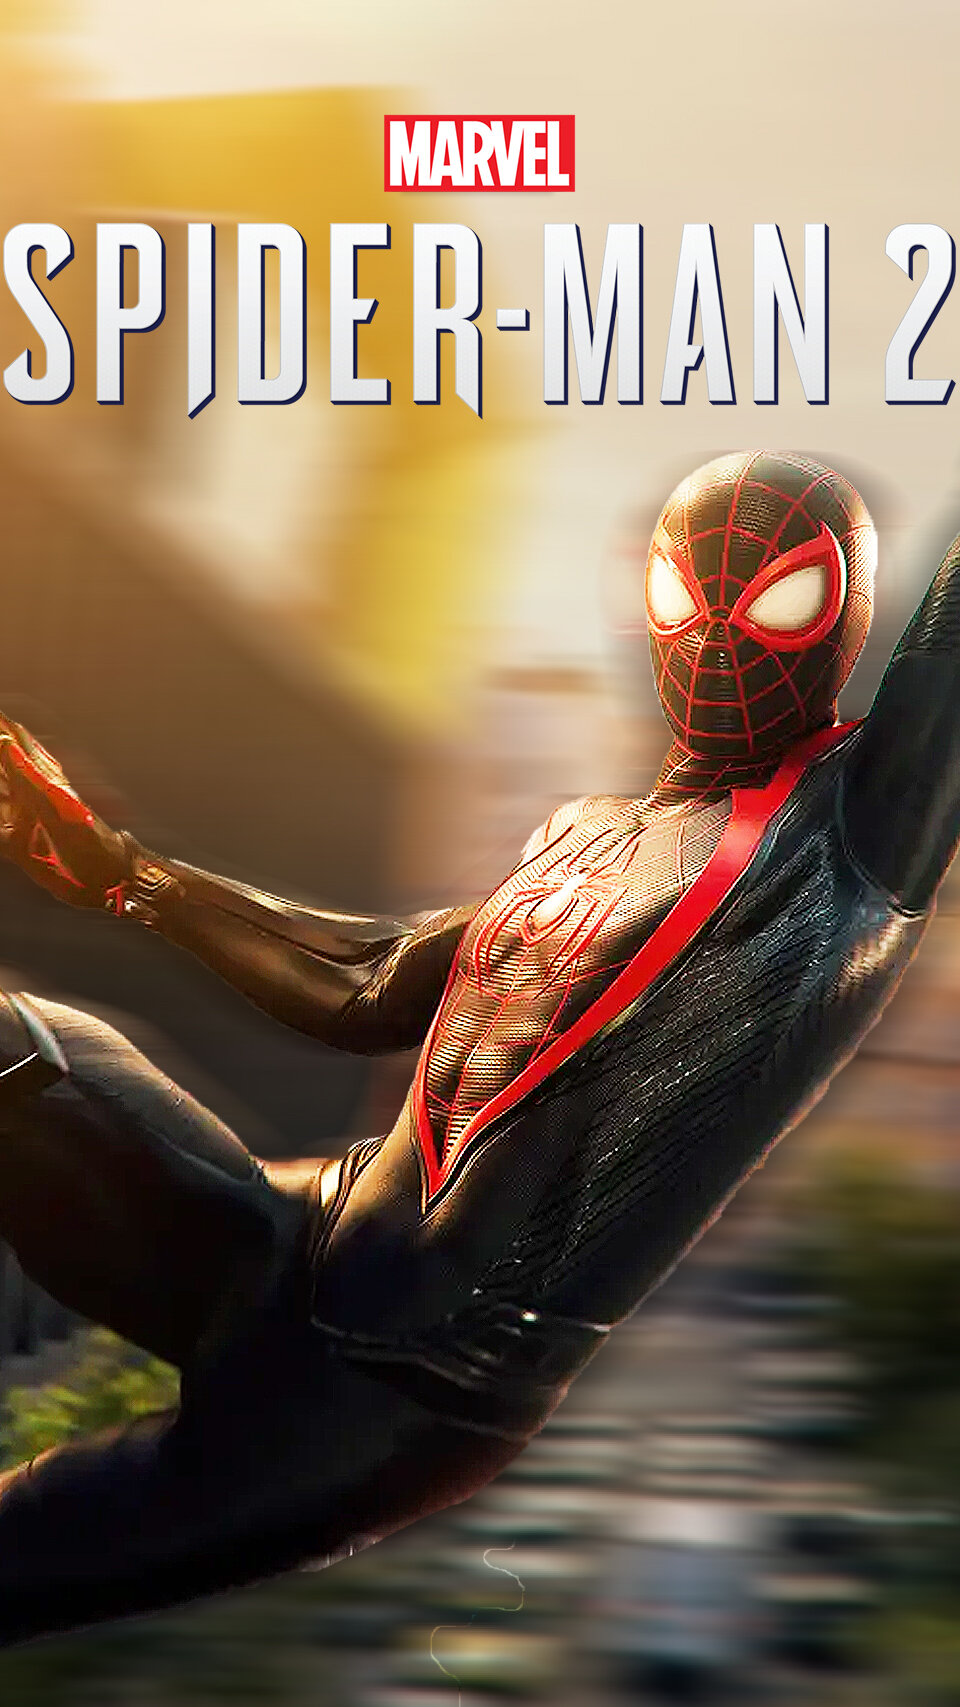 Trent's Spider Man 2 Walkthrough